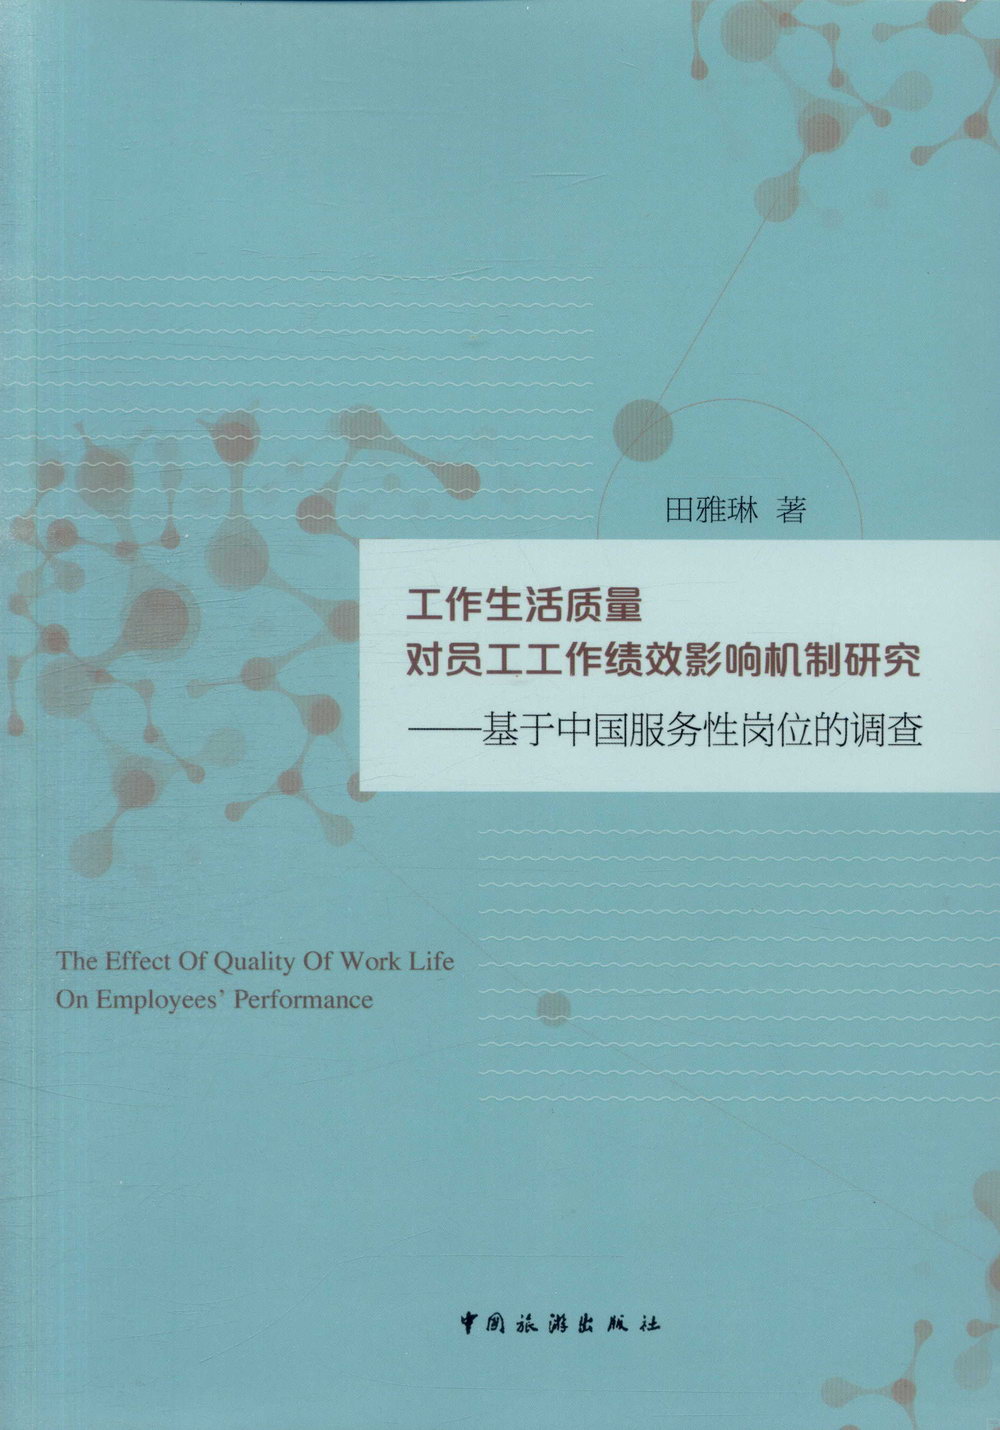 工作生活質量對員工工作績效影響機制研究：基於中國服務性崗位的調查